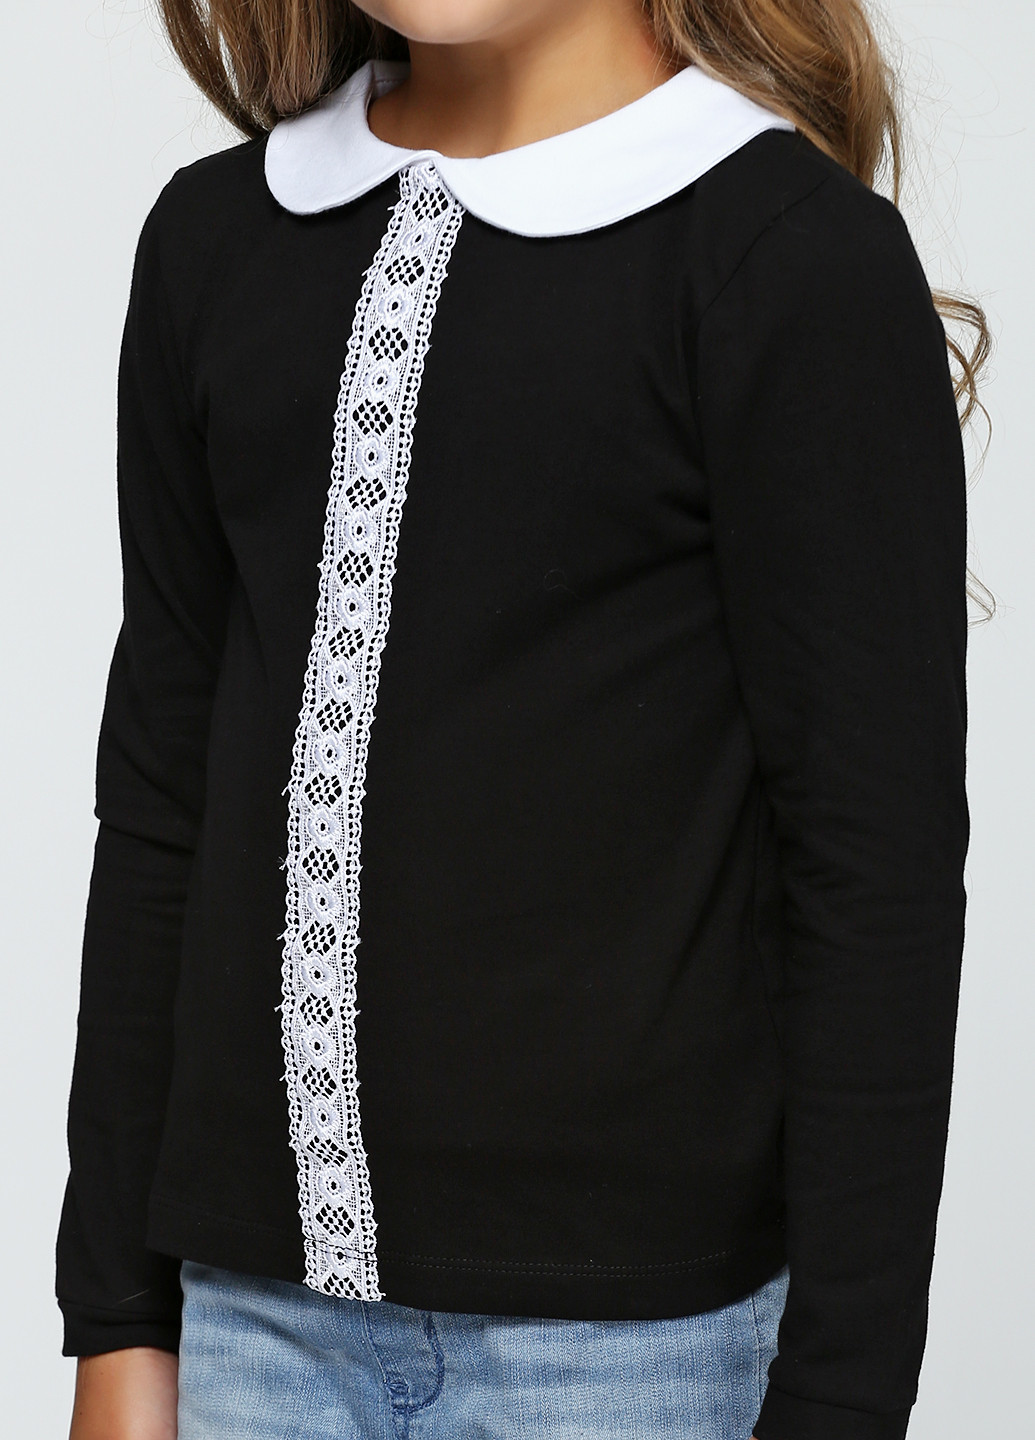 Черная однотонная блузка с длинным рукавом Vidoli демисезонная